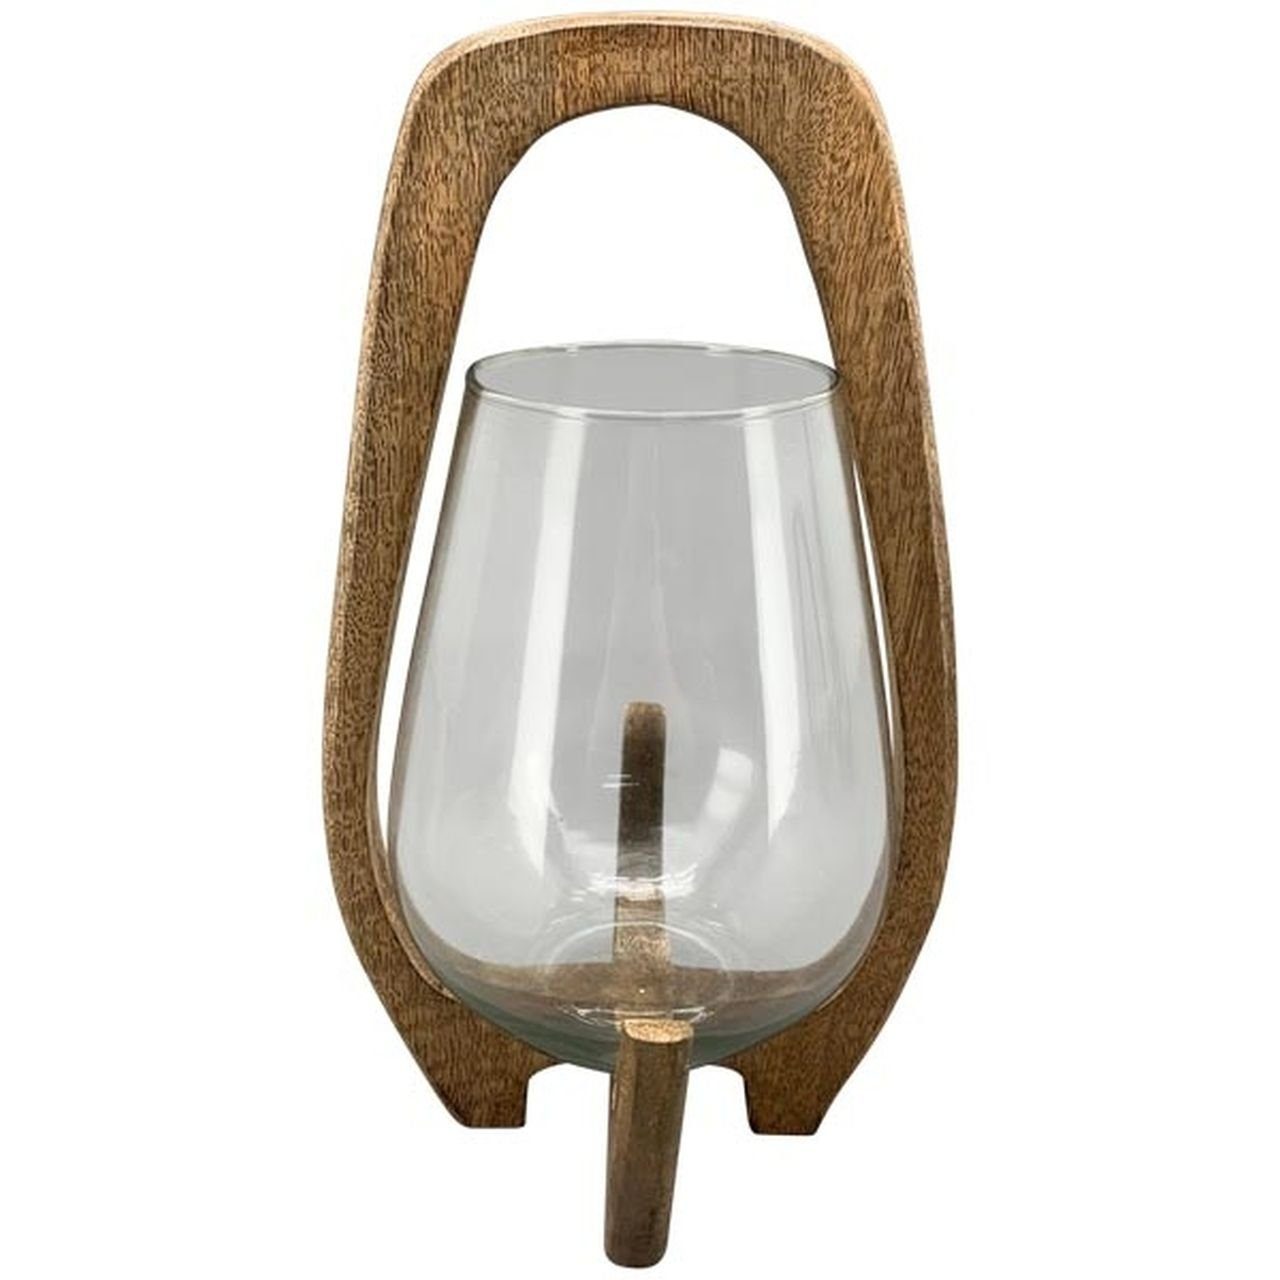 Small-Preis Teelichthalter Windlicht aus Holz mit Glaseinsatz in 3 Größen wählbar